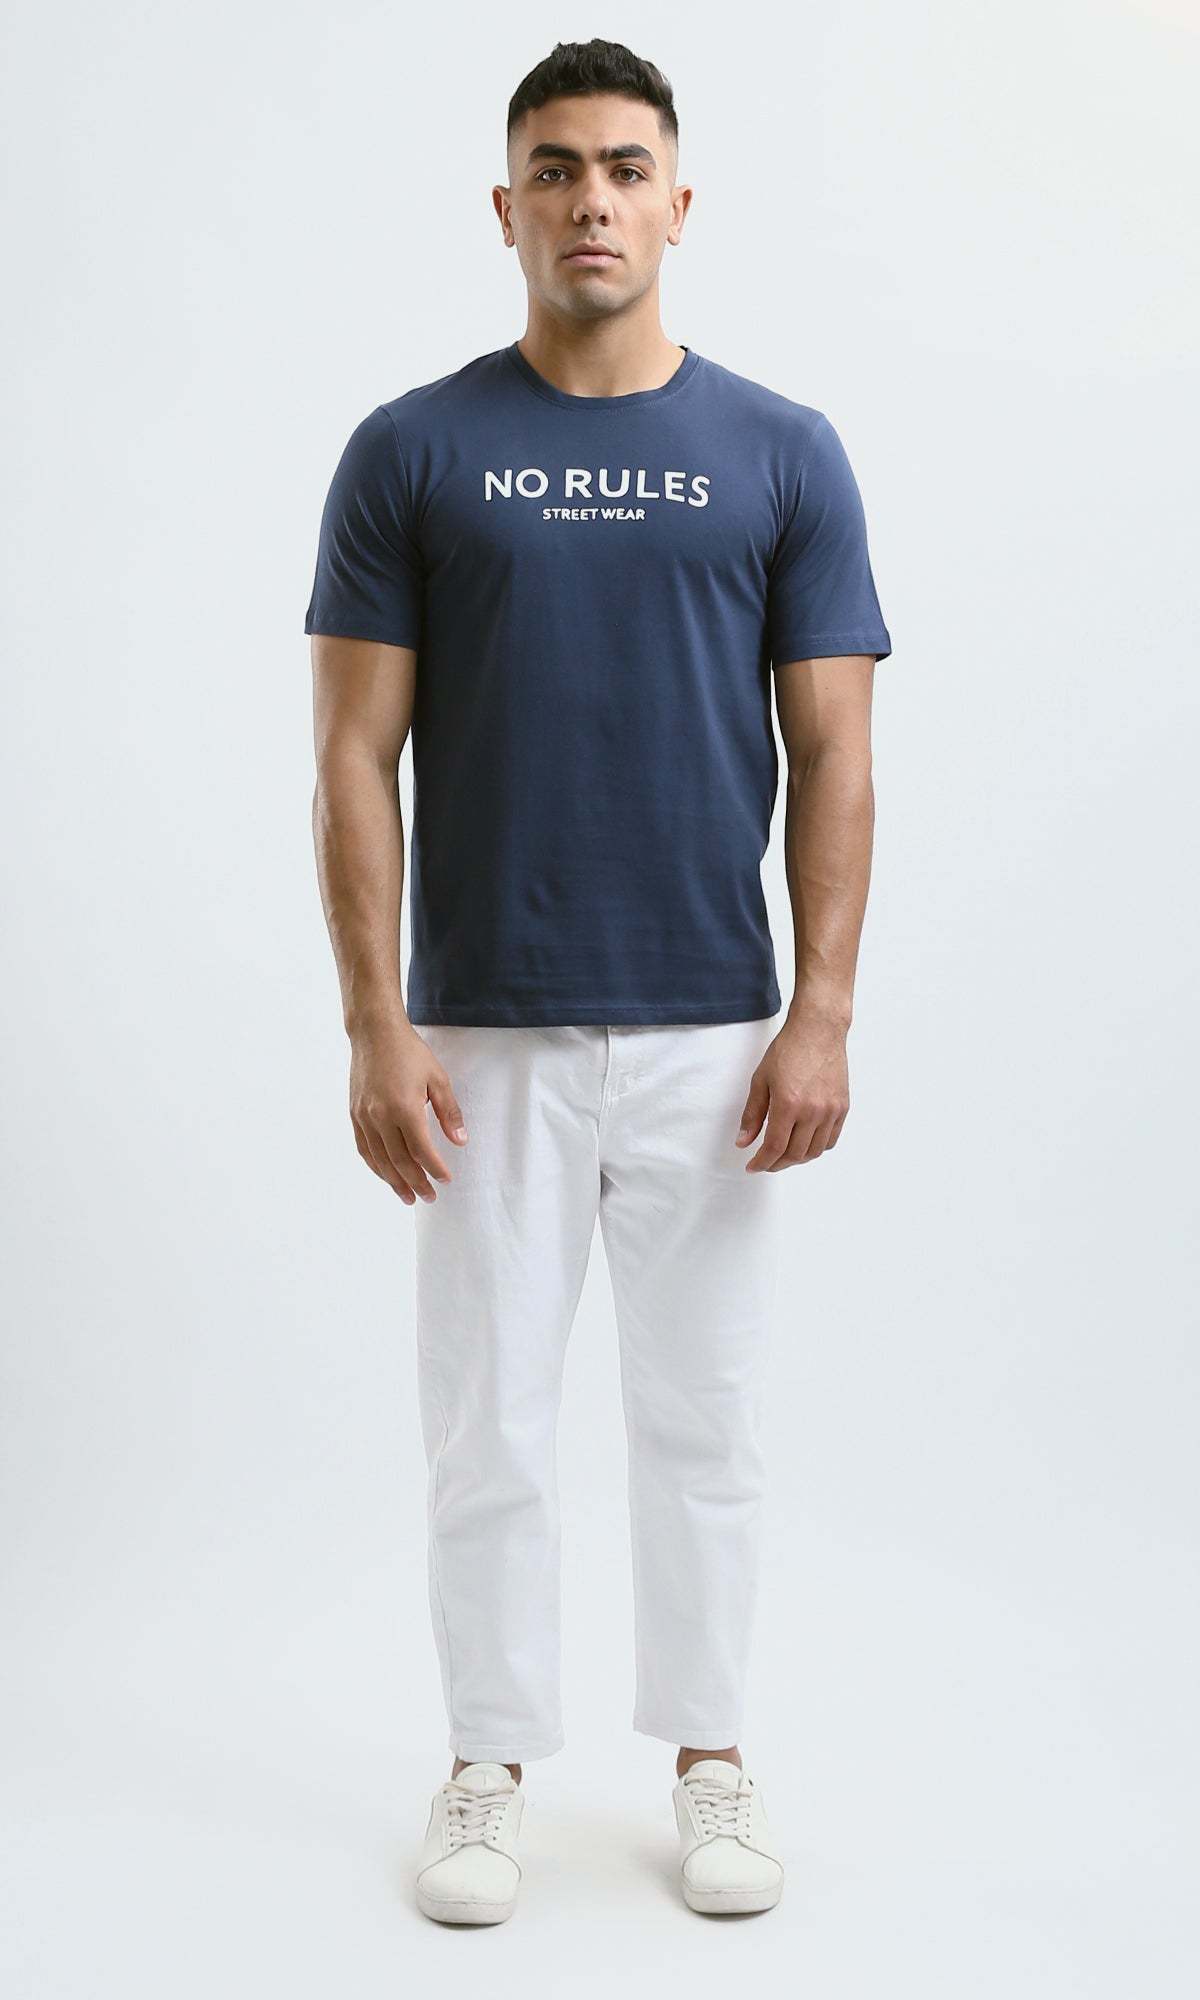 O182896 Printed "No Rules" Short Sleeves Navy Blue Tee